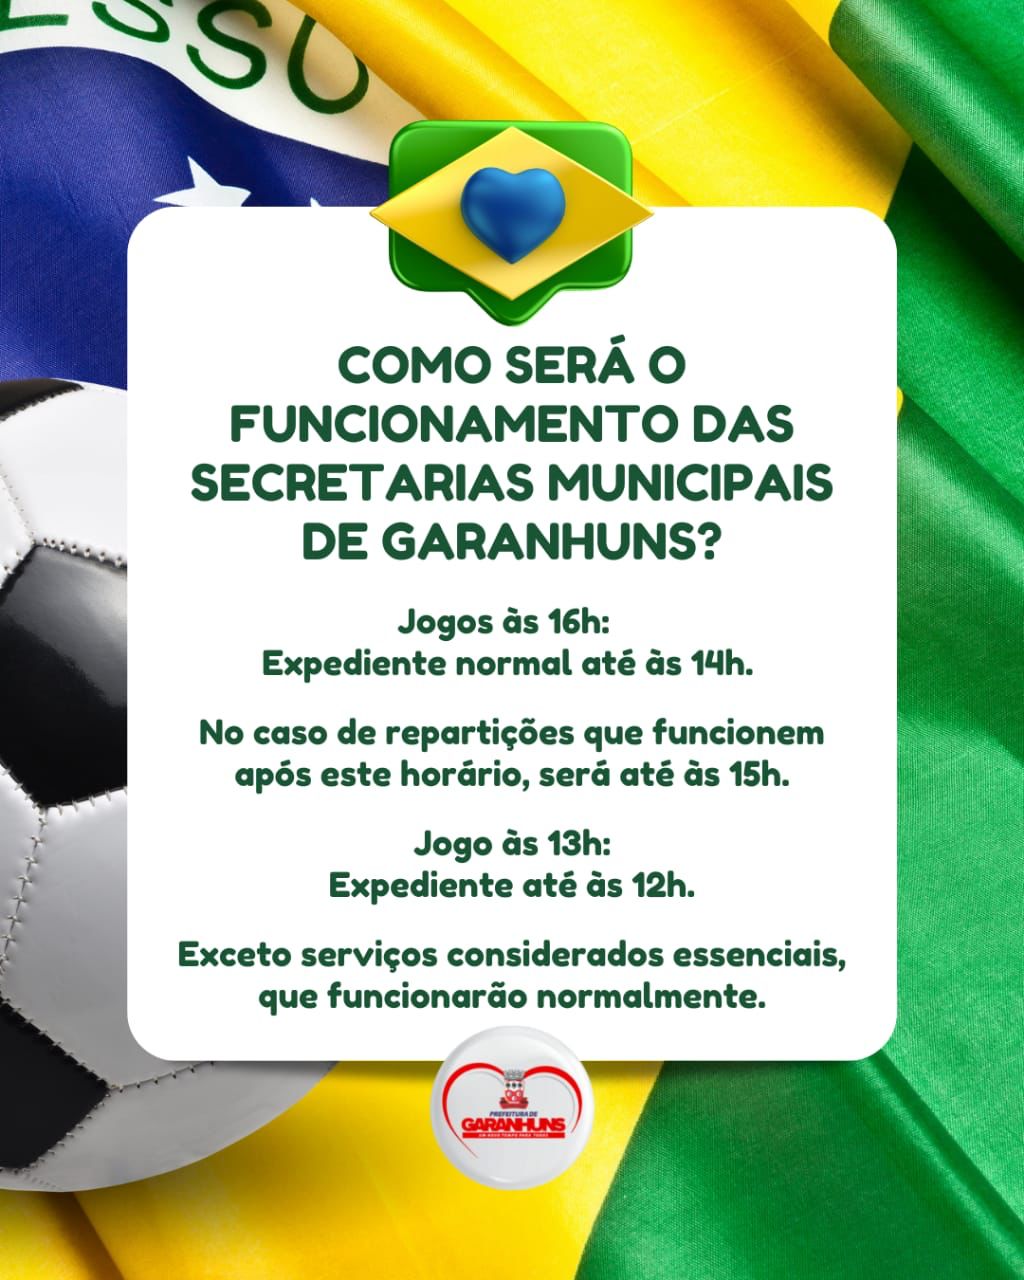 Dias de jogo do Brasil na Copa do Mundo: Prefeitura de Teresópolis